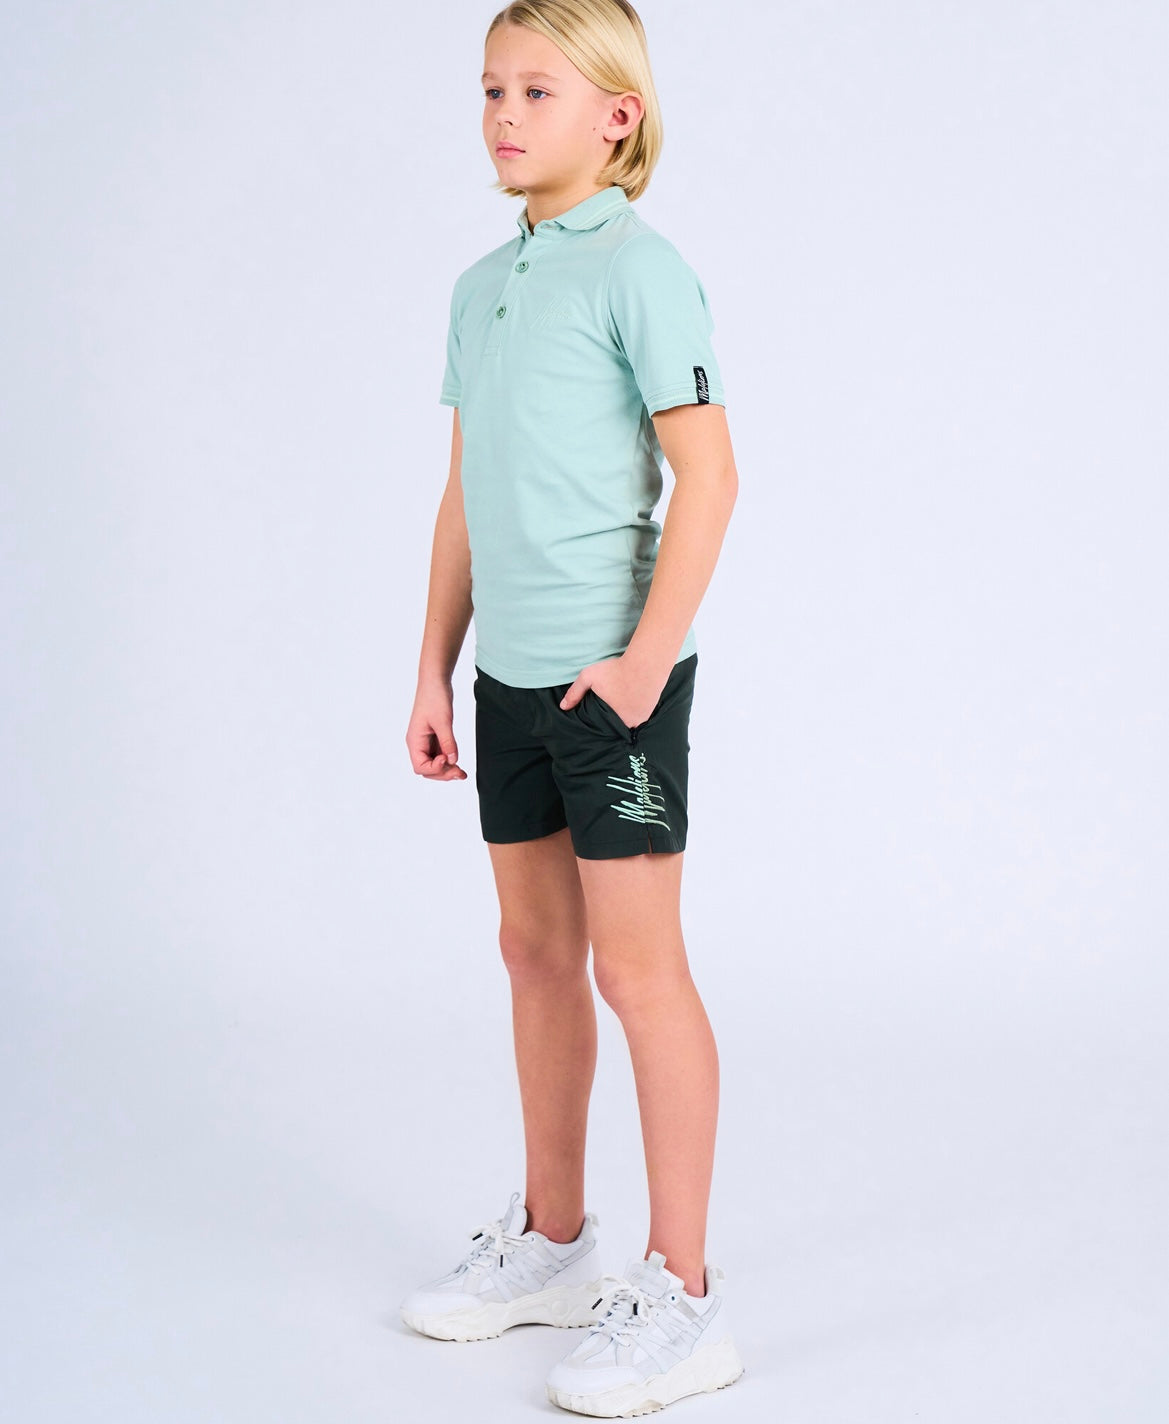 Malelions junior split swim shorts - dark green/mint